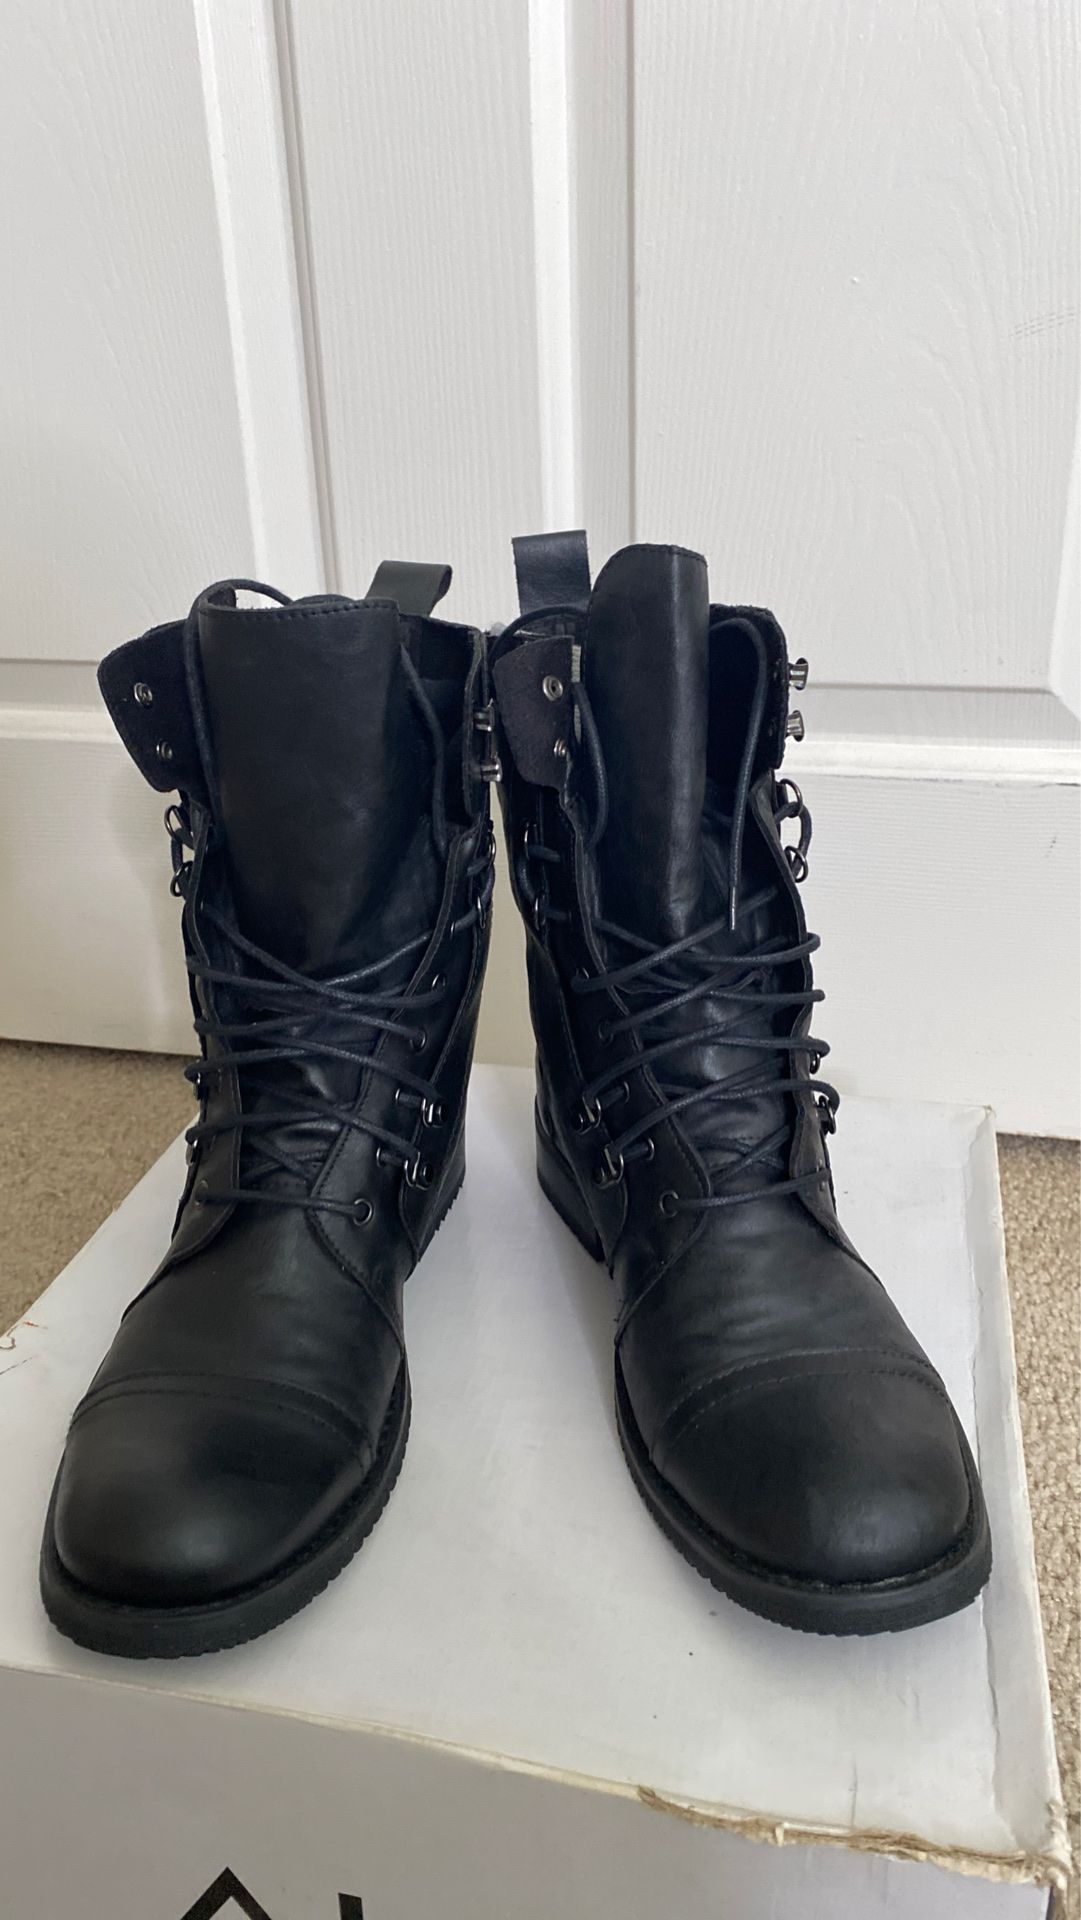 Men’s black boots